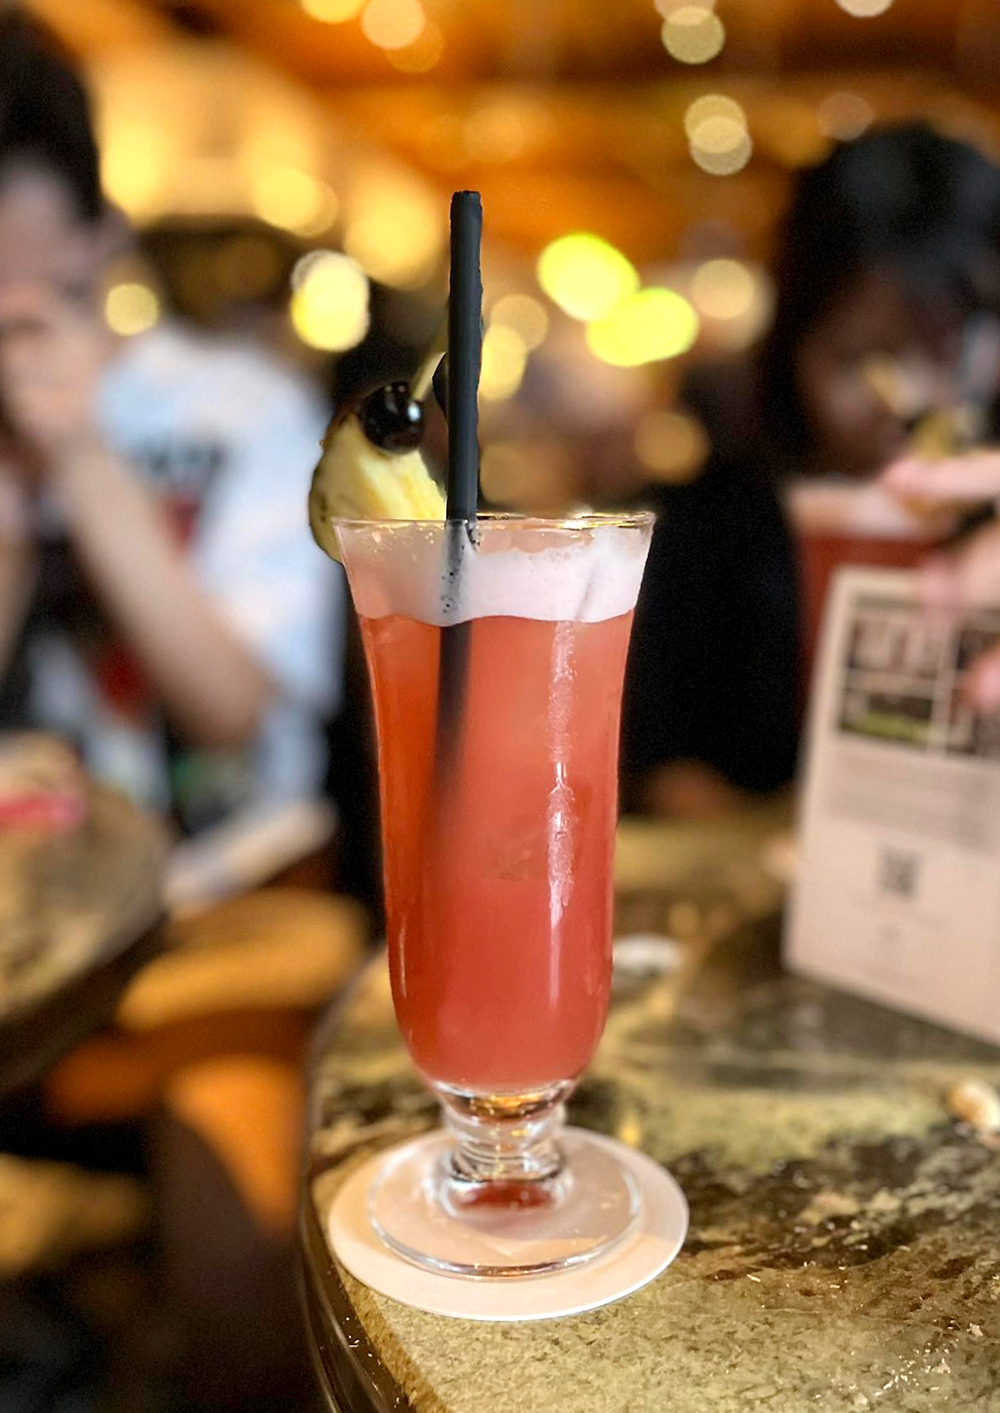 Cocktail Singapore Sling, thức uống đã hơn 100 năm tuổi ở Long bar...